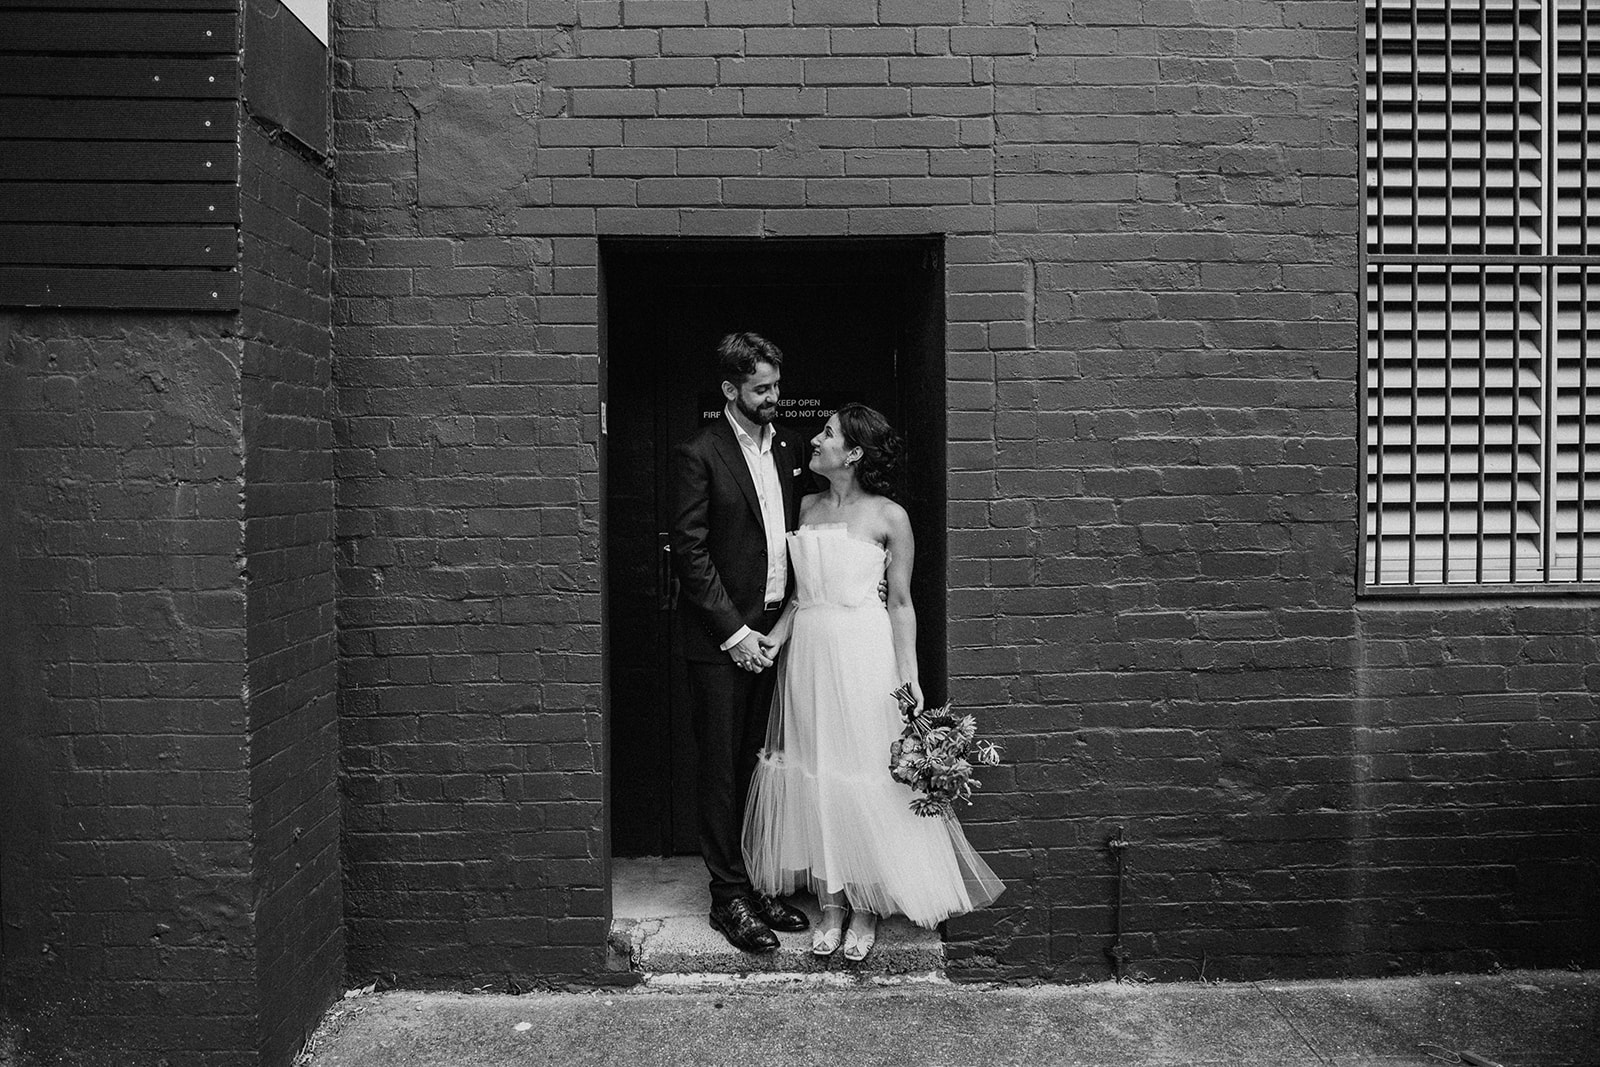 Scott Surplice bride and groom pose in doorway